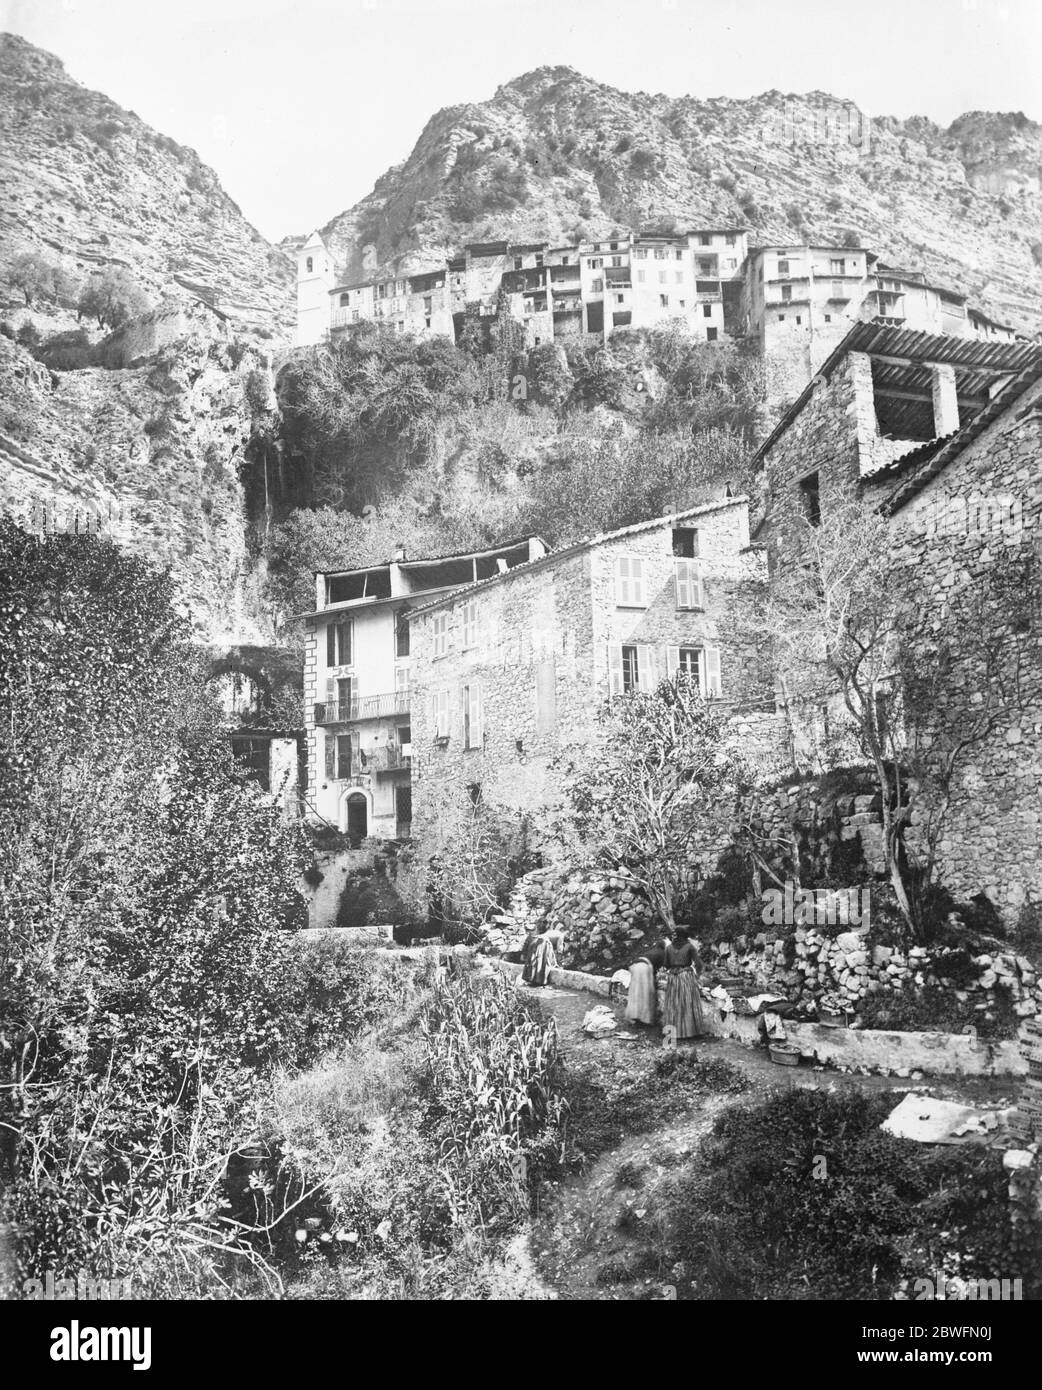 Les glissements de terrain tuent 30 . Après trois semaines de mauvais temps , une avalanche de boue et de pierres a emporté la moitié du village de Roquebillière , à environ 25 miles au nord de Nice . Trente personnes sont mortes . Vue sur Roquebillière. 25 novembre 1926 Banque D'Images